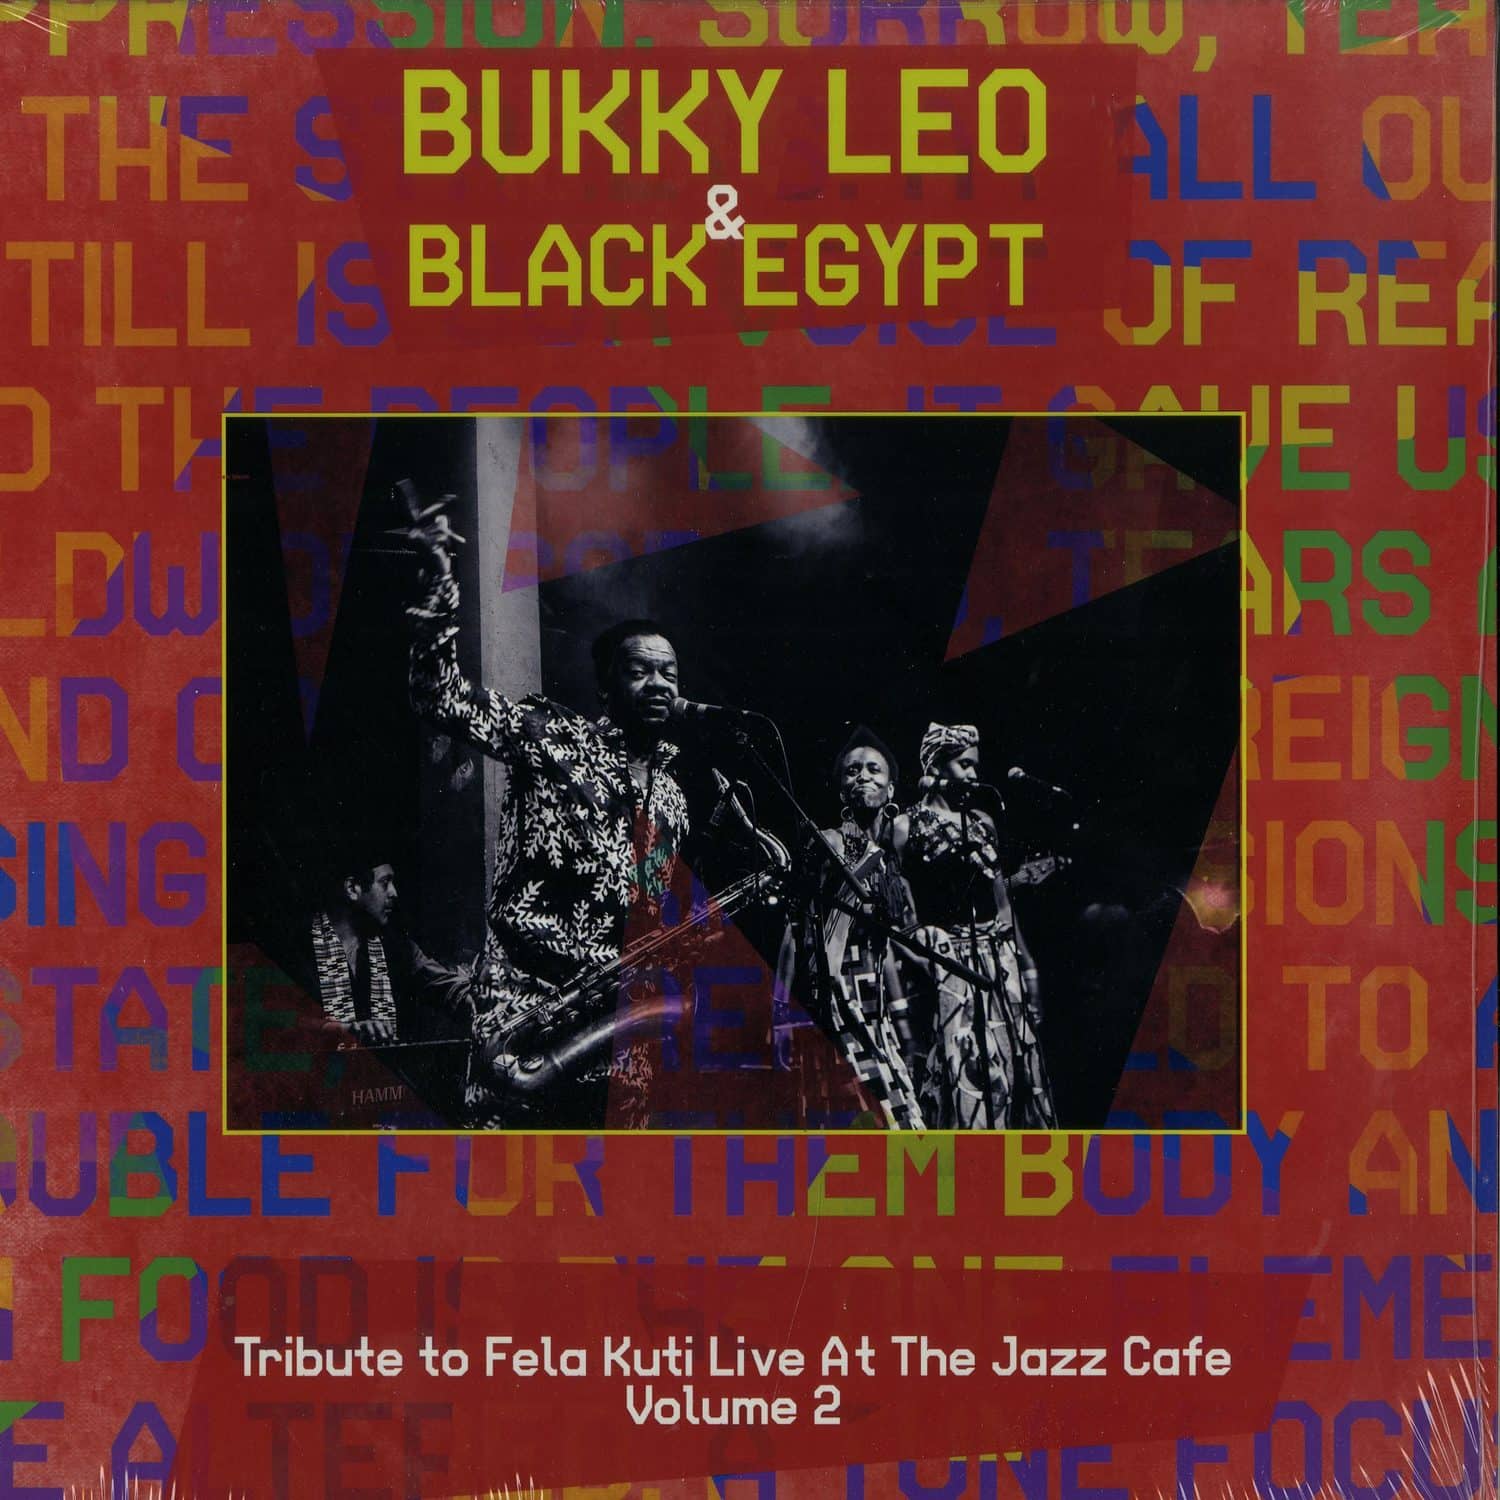 Bukky Leo & Black Egypt - TRIBUTE TO FELA KUTI LIVE AT THE JAZZ CAFE VOL. 2 